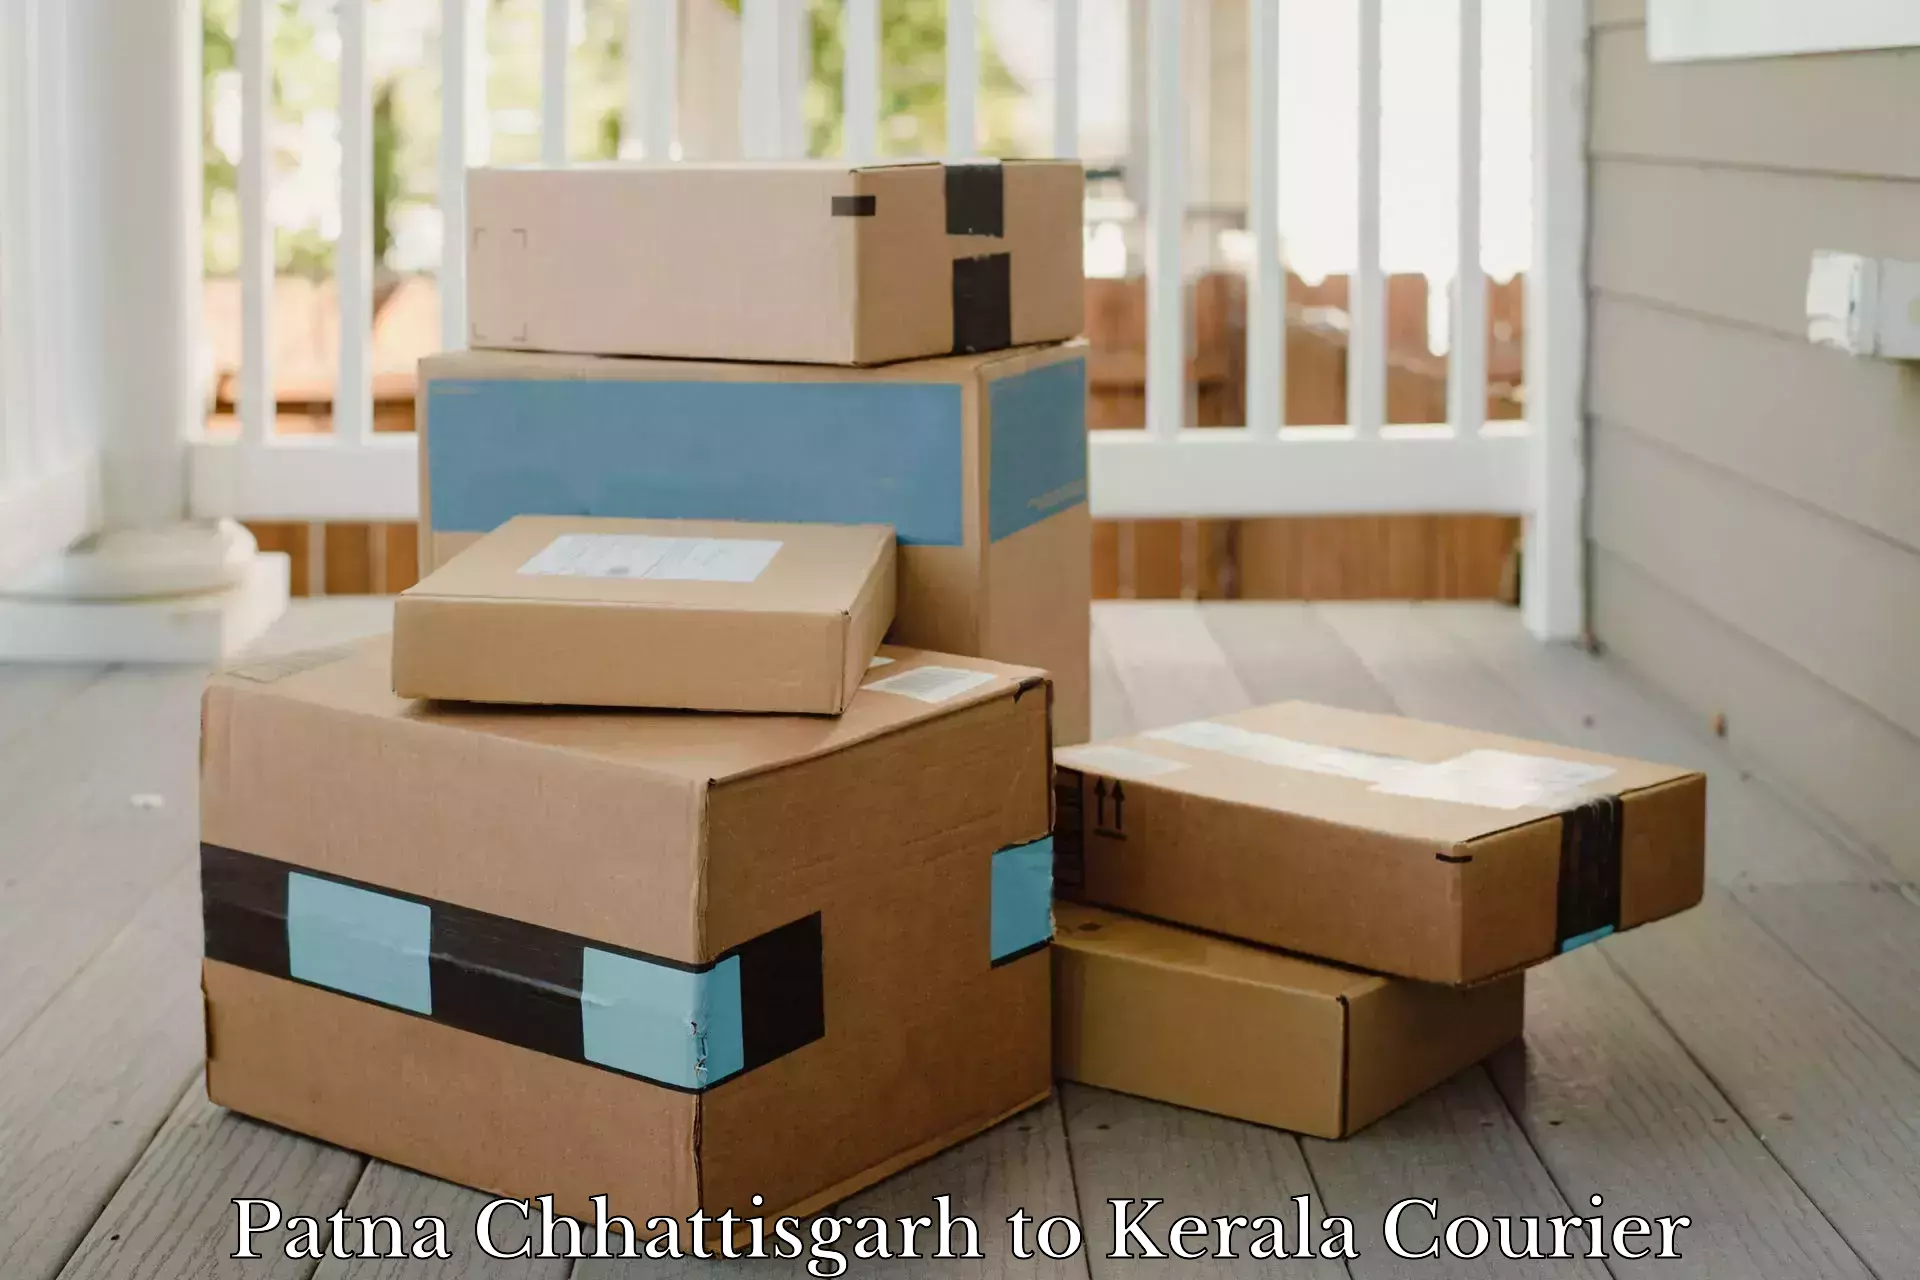 Urgent courier needs Patna Chhattisgarh to Kottayam